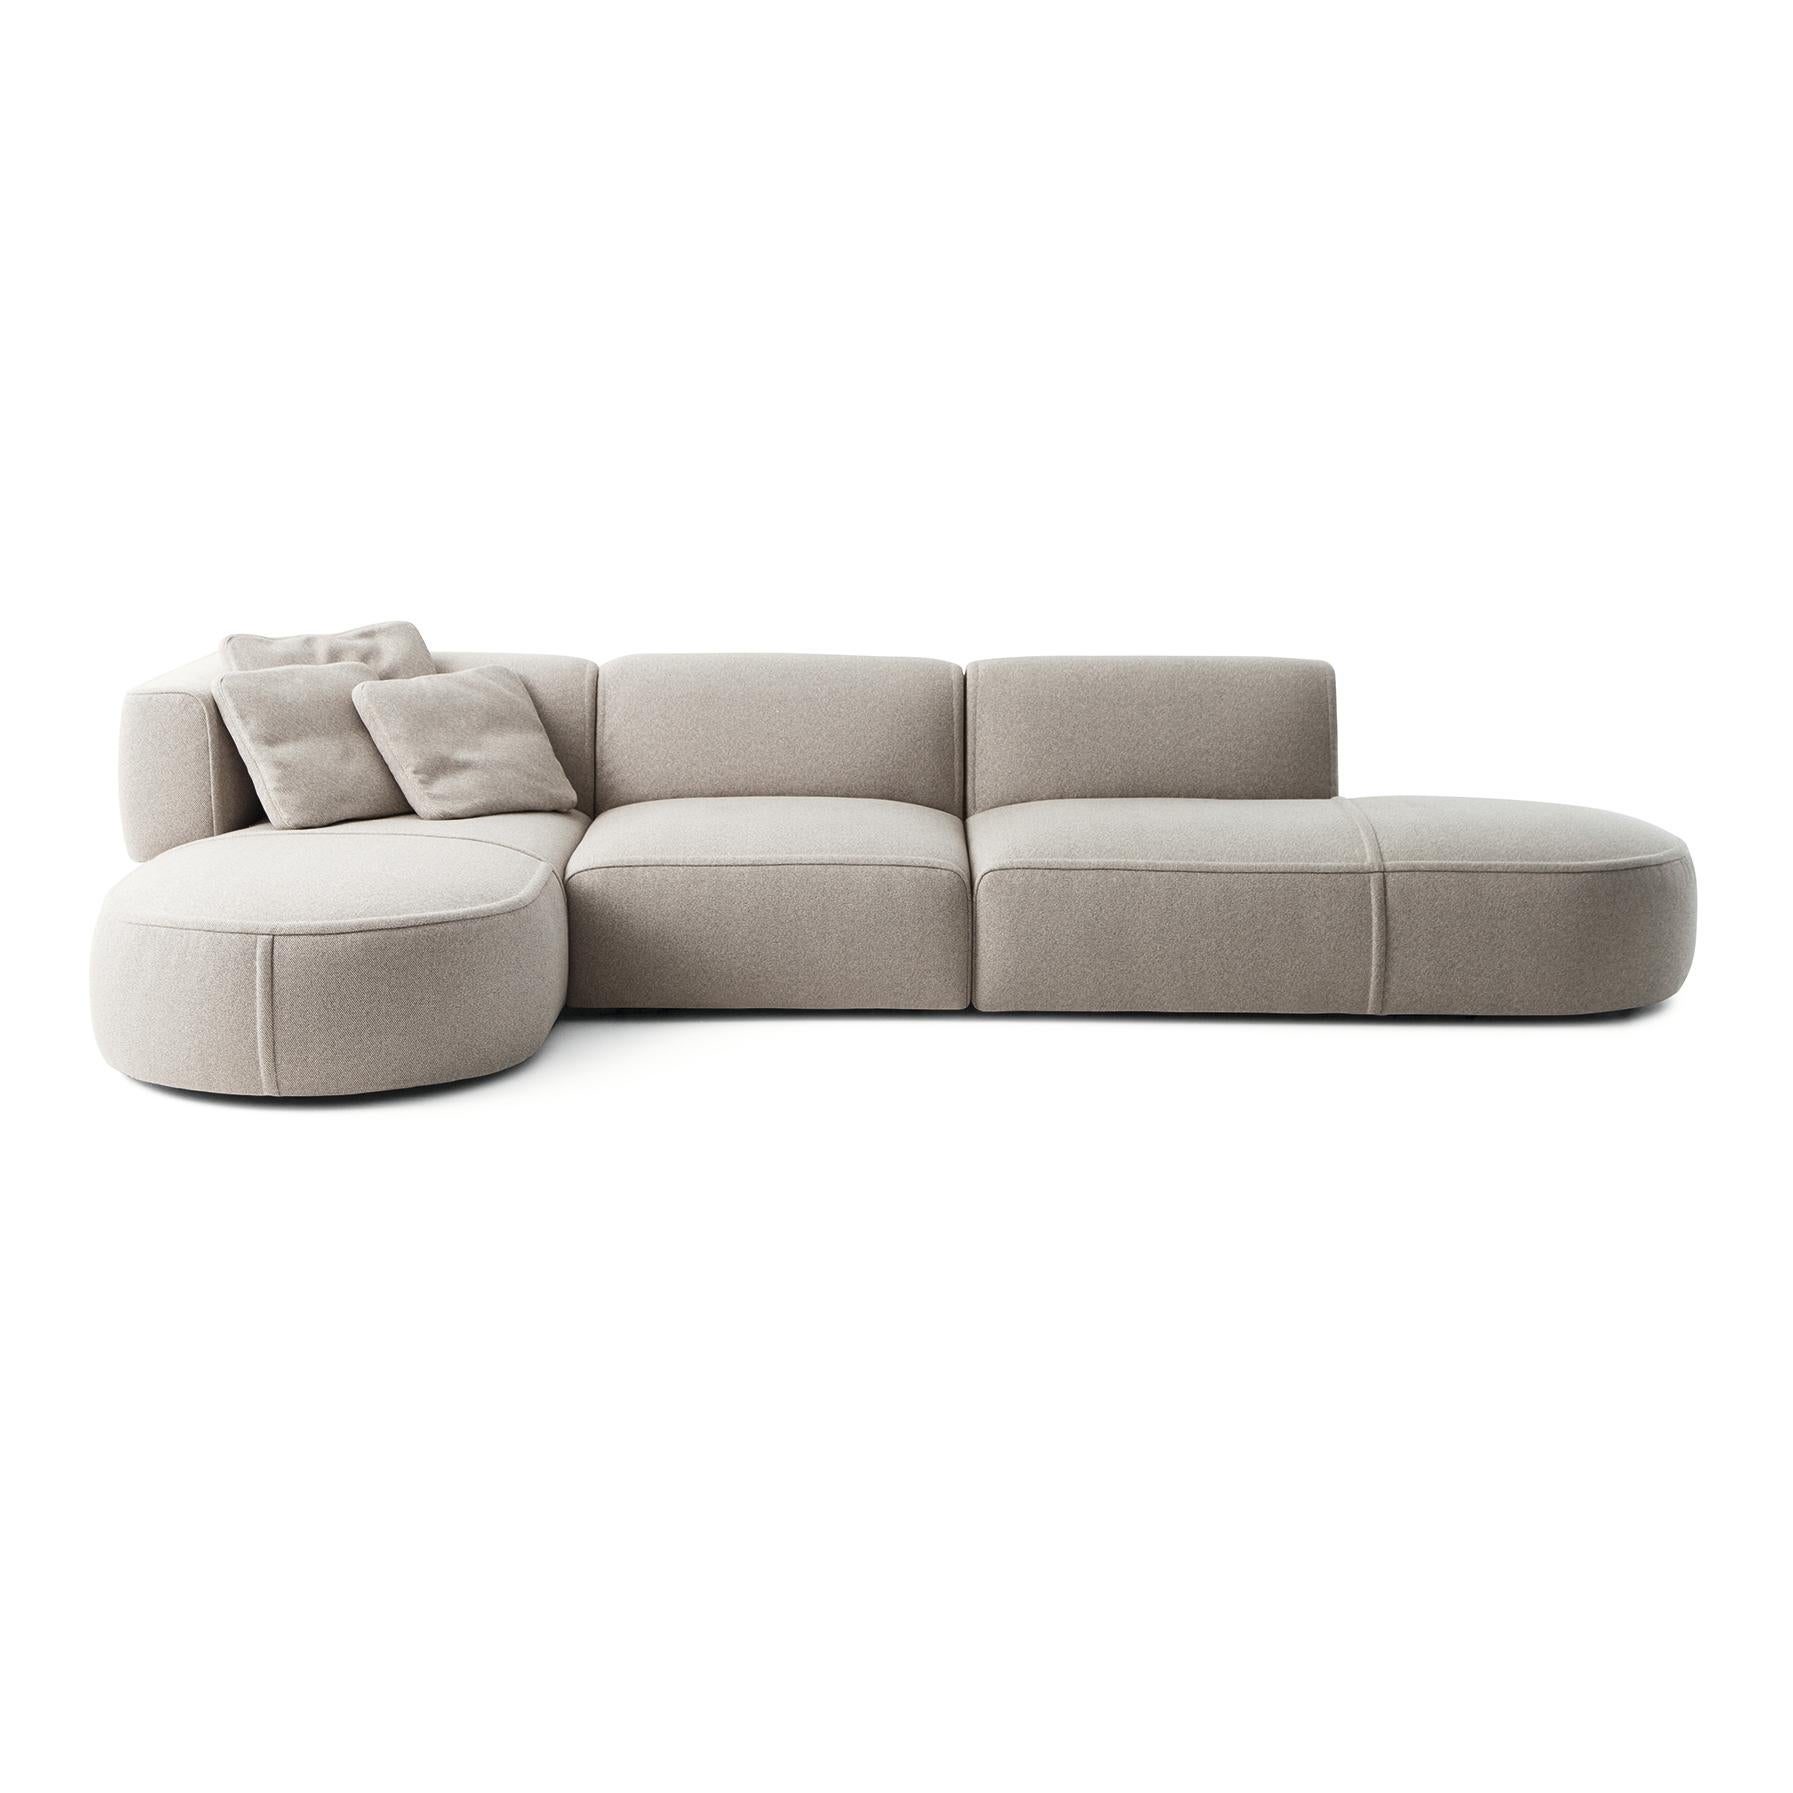 Modulares Sofa, entworfen von Patricia Urquiola im Jahr 2018. Hergestellt von Cassina in Italien.

Ein erfindungsreiches modulares Sofa mit weichen, einladenden Kurven, die höchsten Komfort und extreme Vielseitigkeit versprechen. Die abgerundeten